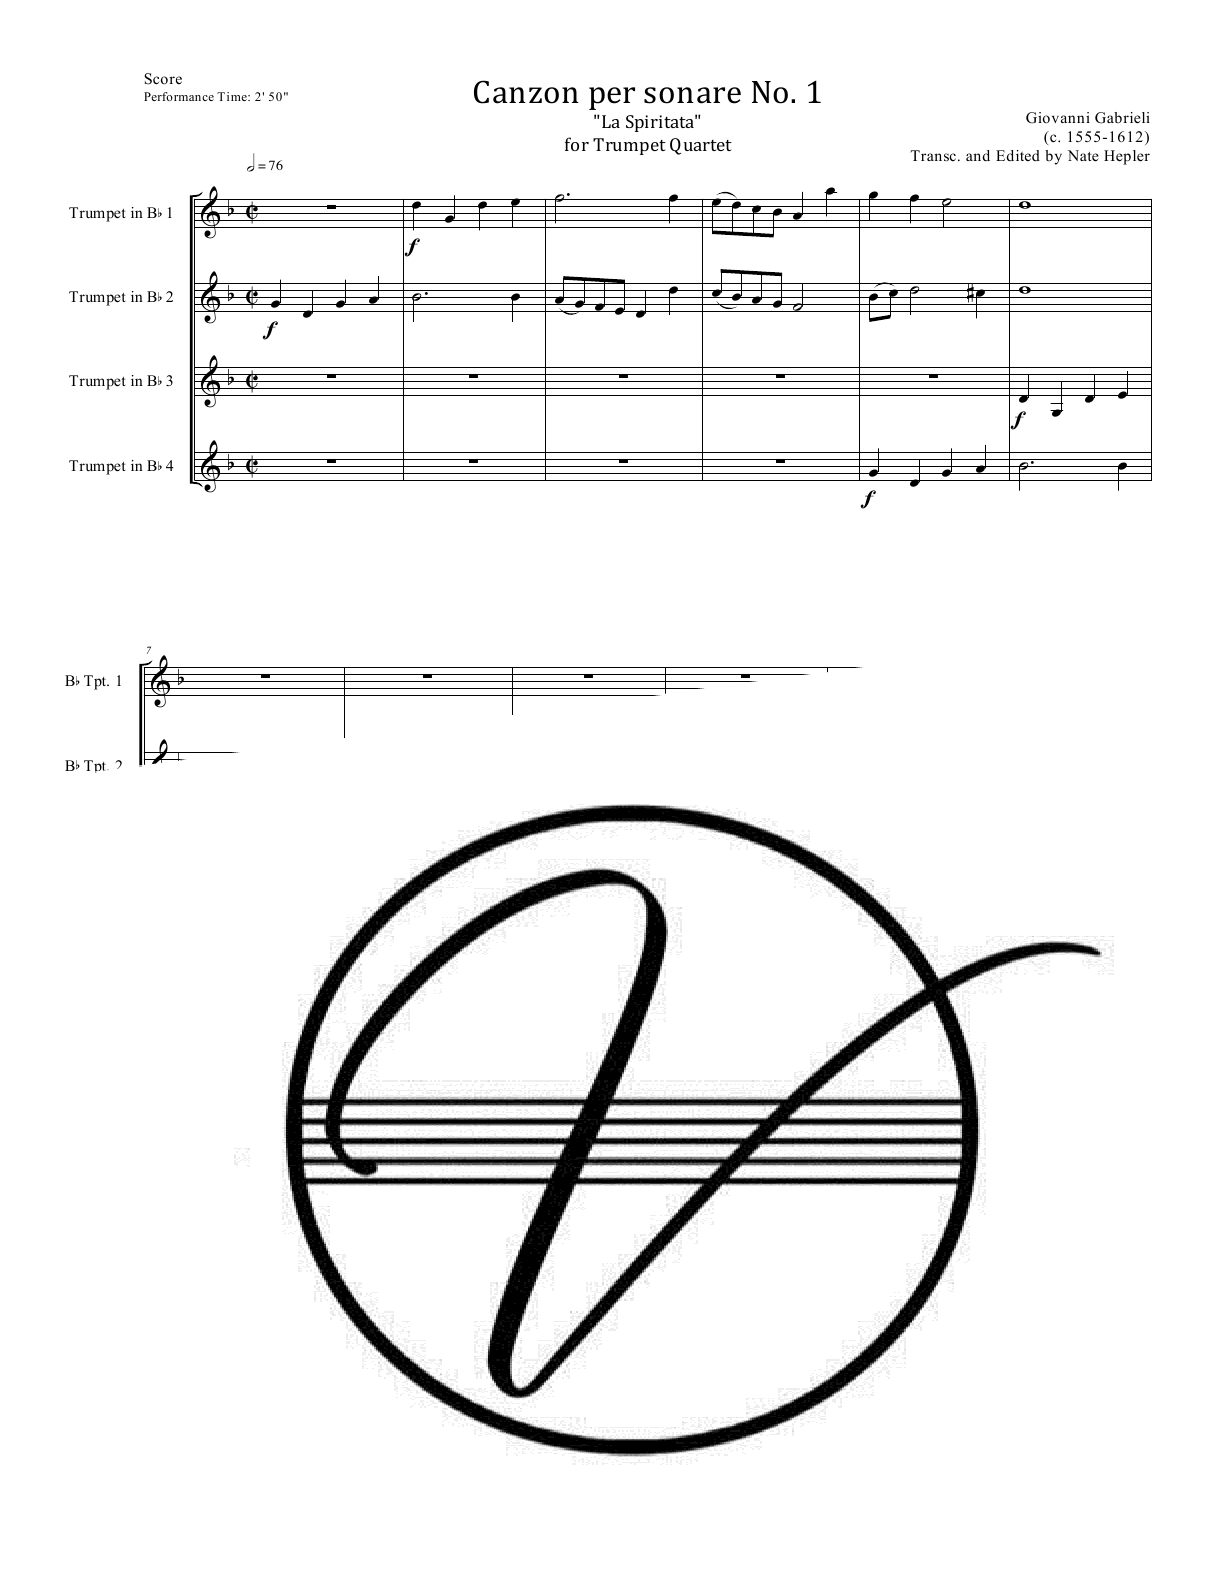 Gabrieli - Canzon per sonare No. 1 (Trumpet Quartet)